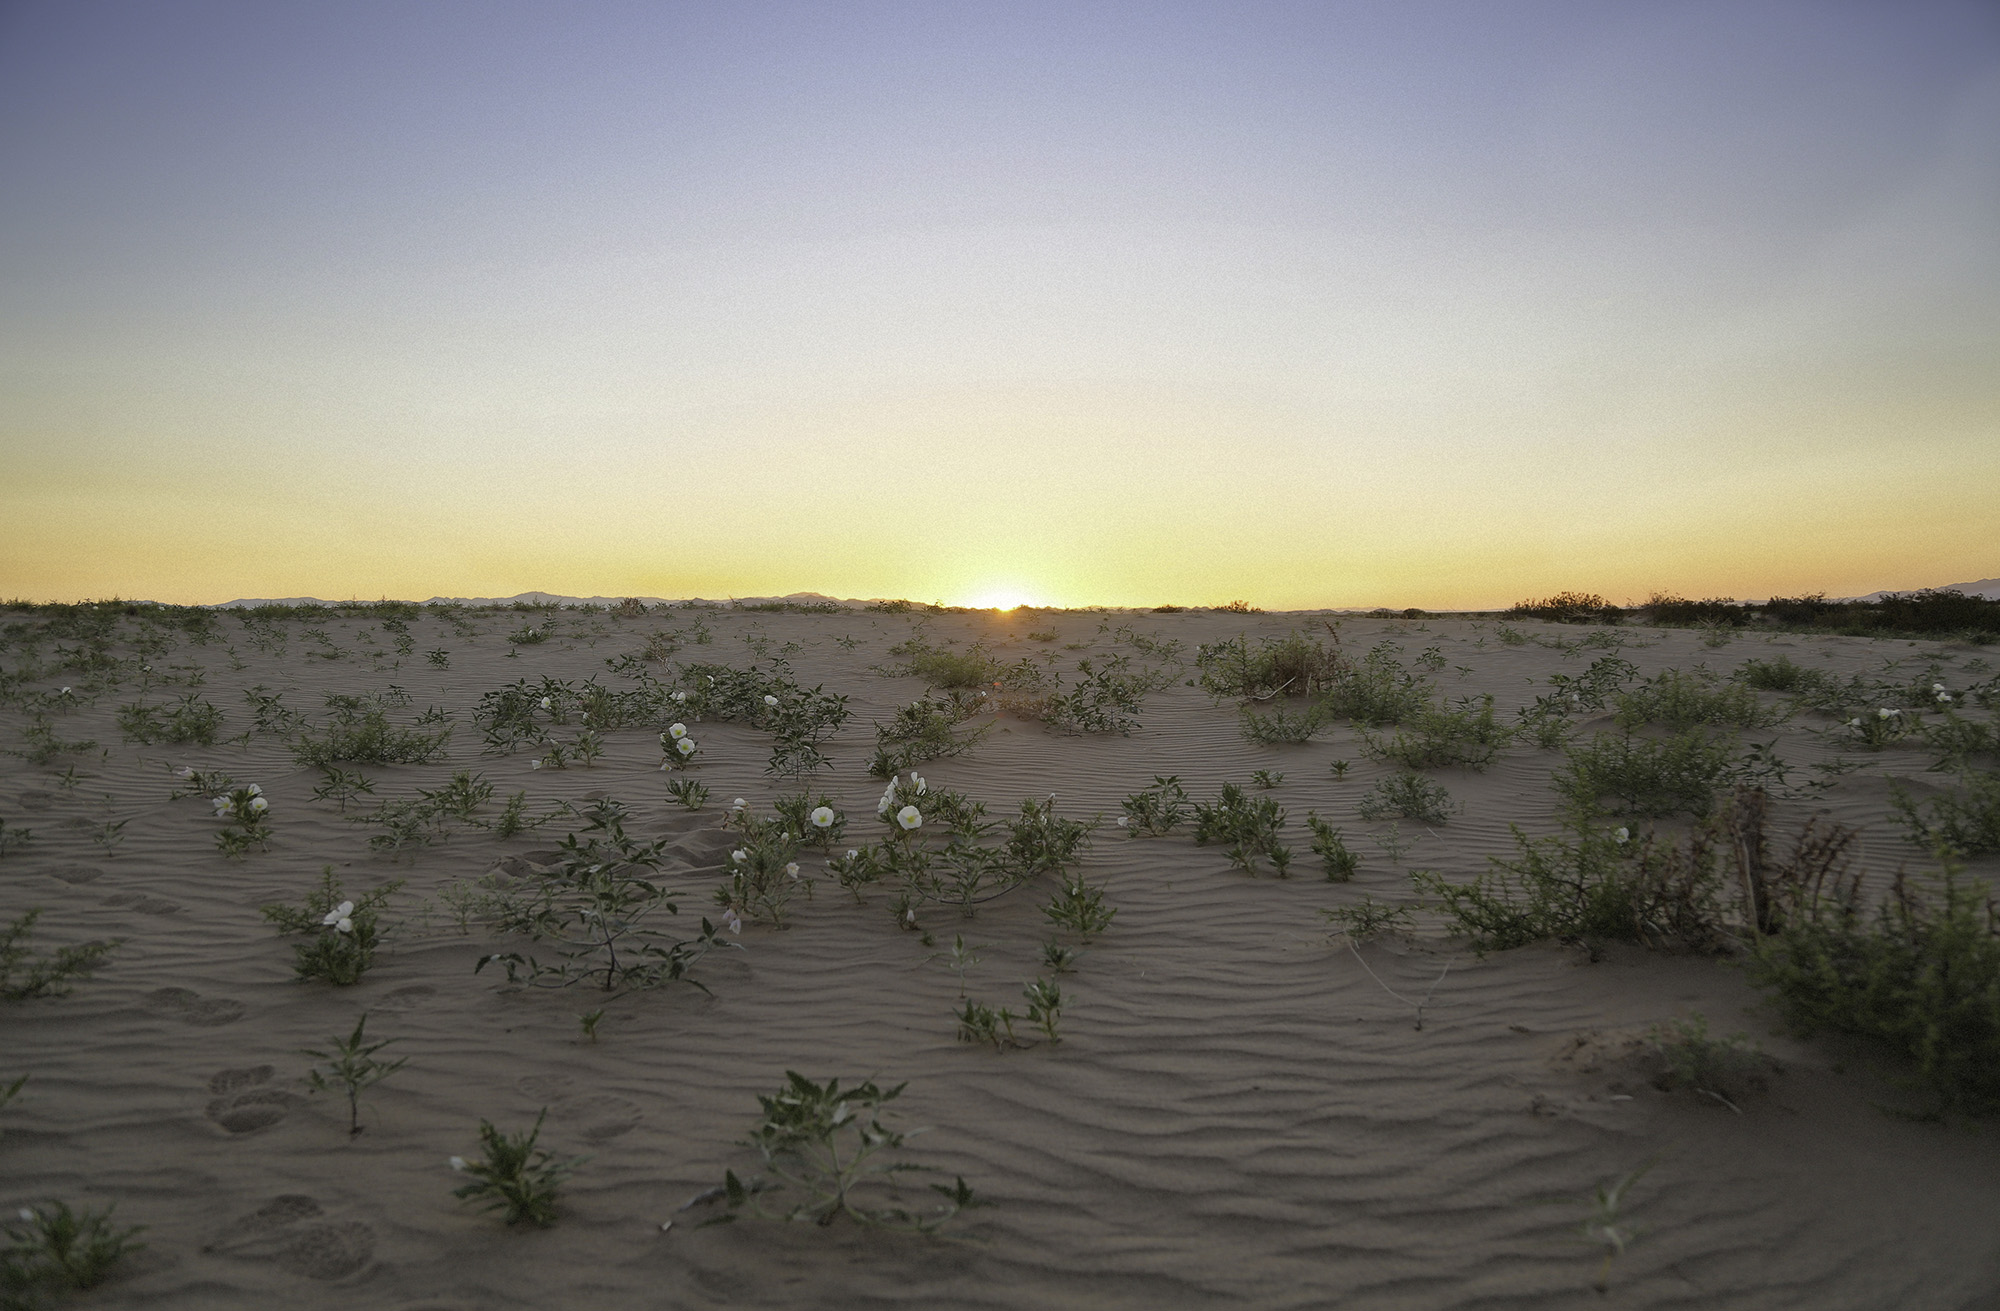 Sunset at Cadiz Sand Dunes with flowering desert plants dotting the sand dune.